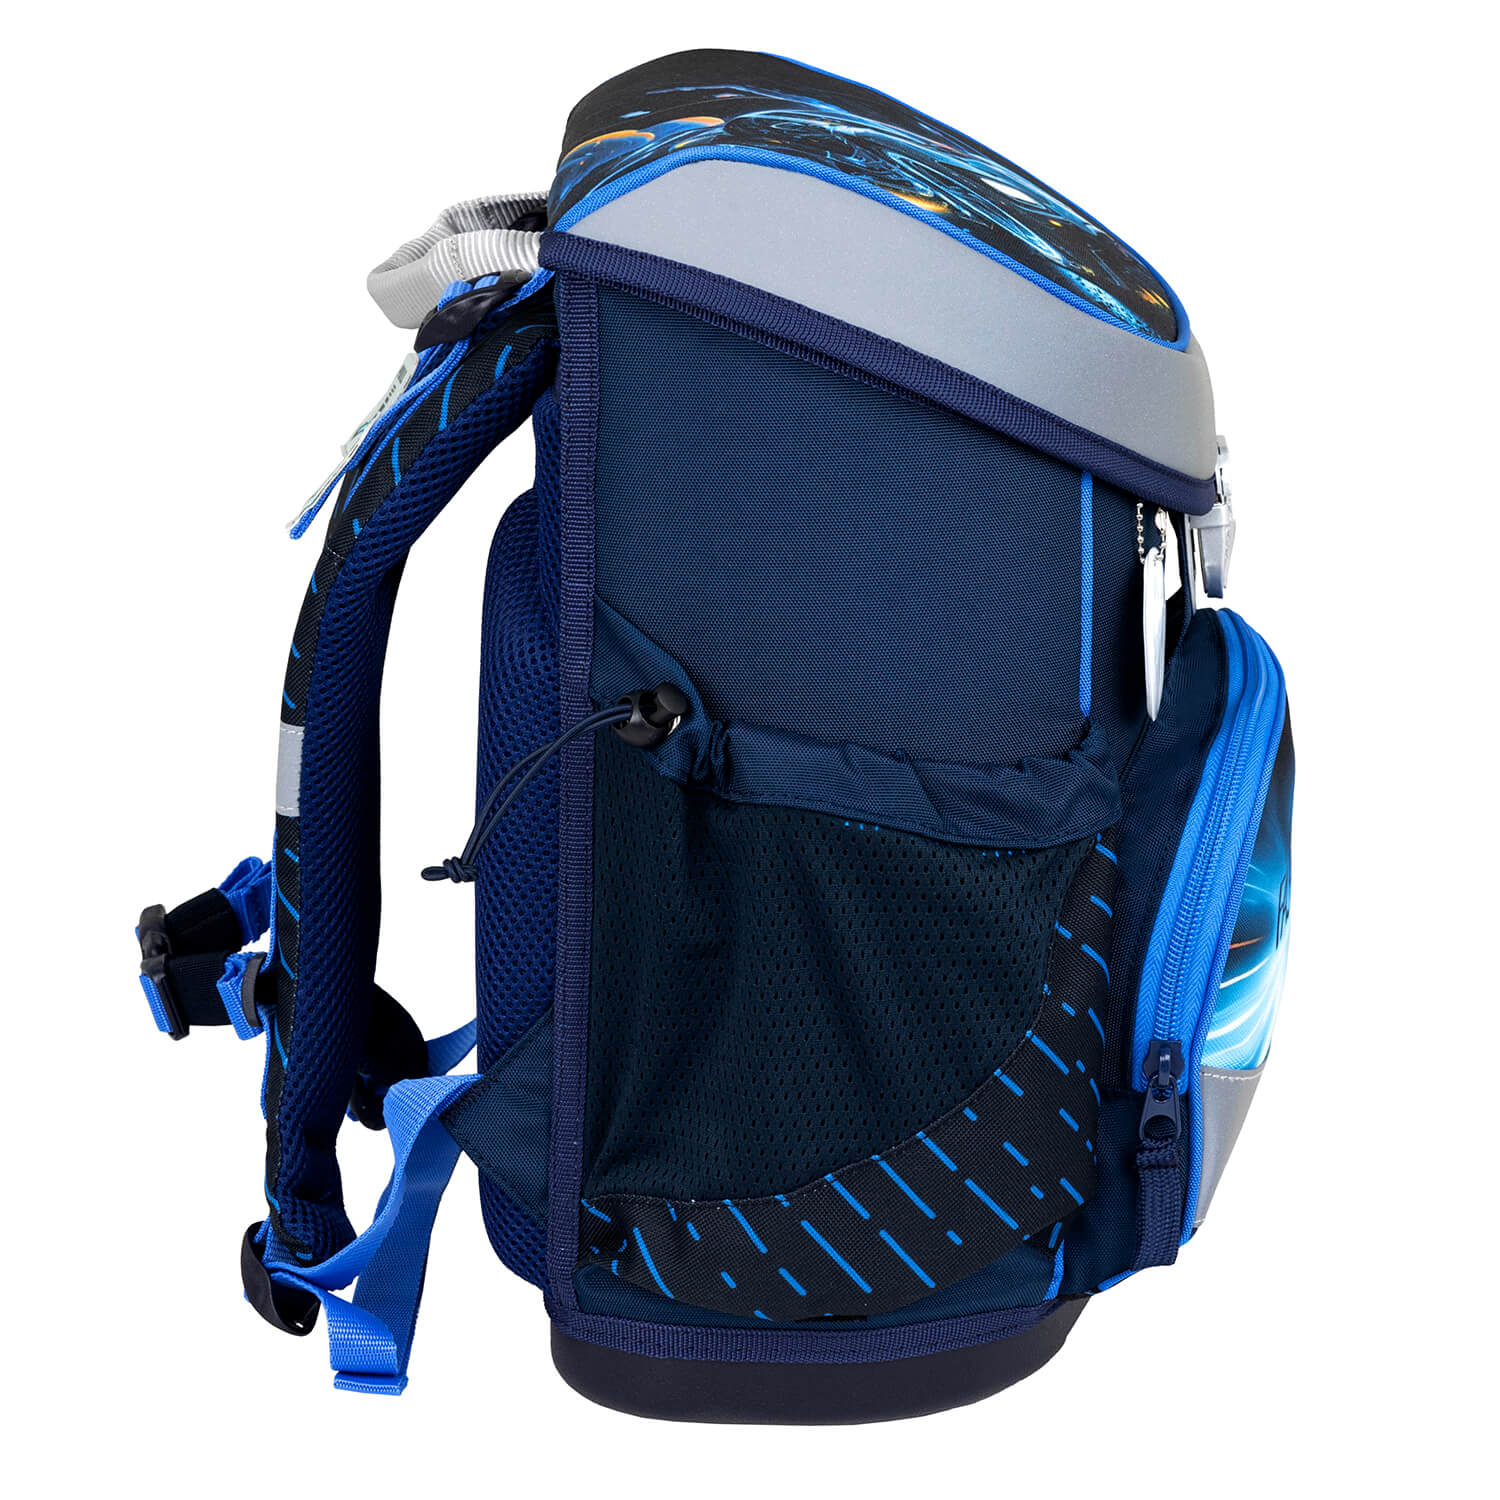 Mini-Fit Fastline schoolbag set 4 pcs